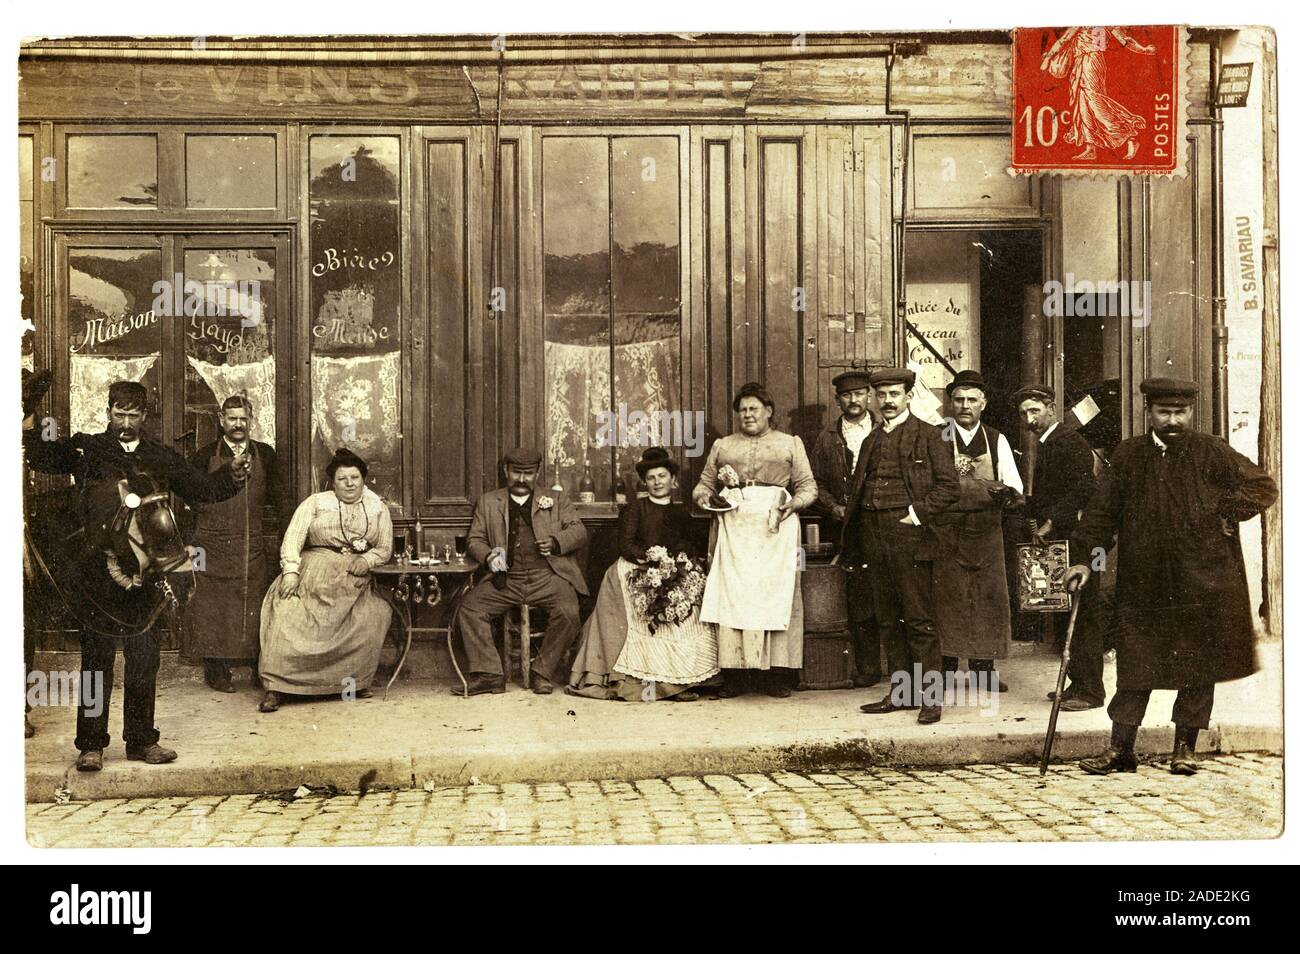 Commerce de Vins, Traiteur et Hotel, maison Gayda, rue Brancion, Paris. Carte postale Debüt XXeme siecle. Stockfoto